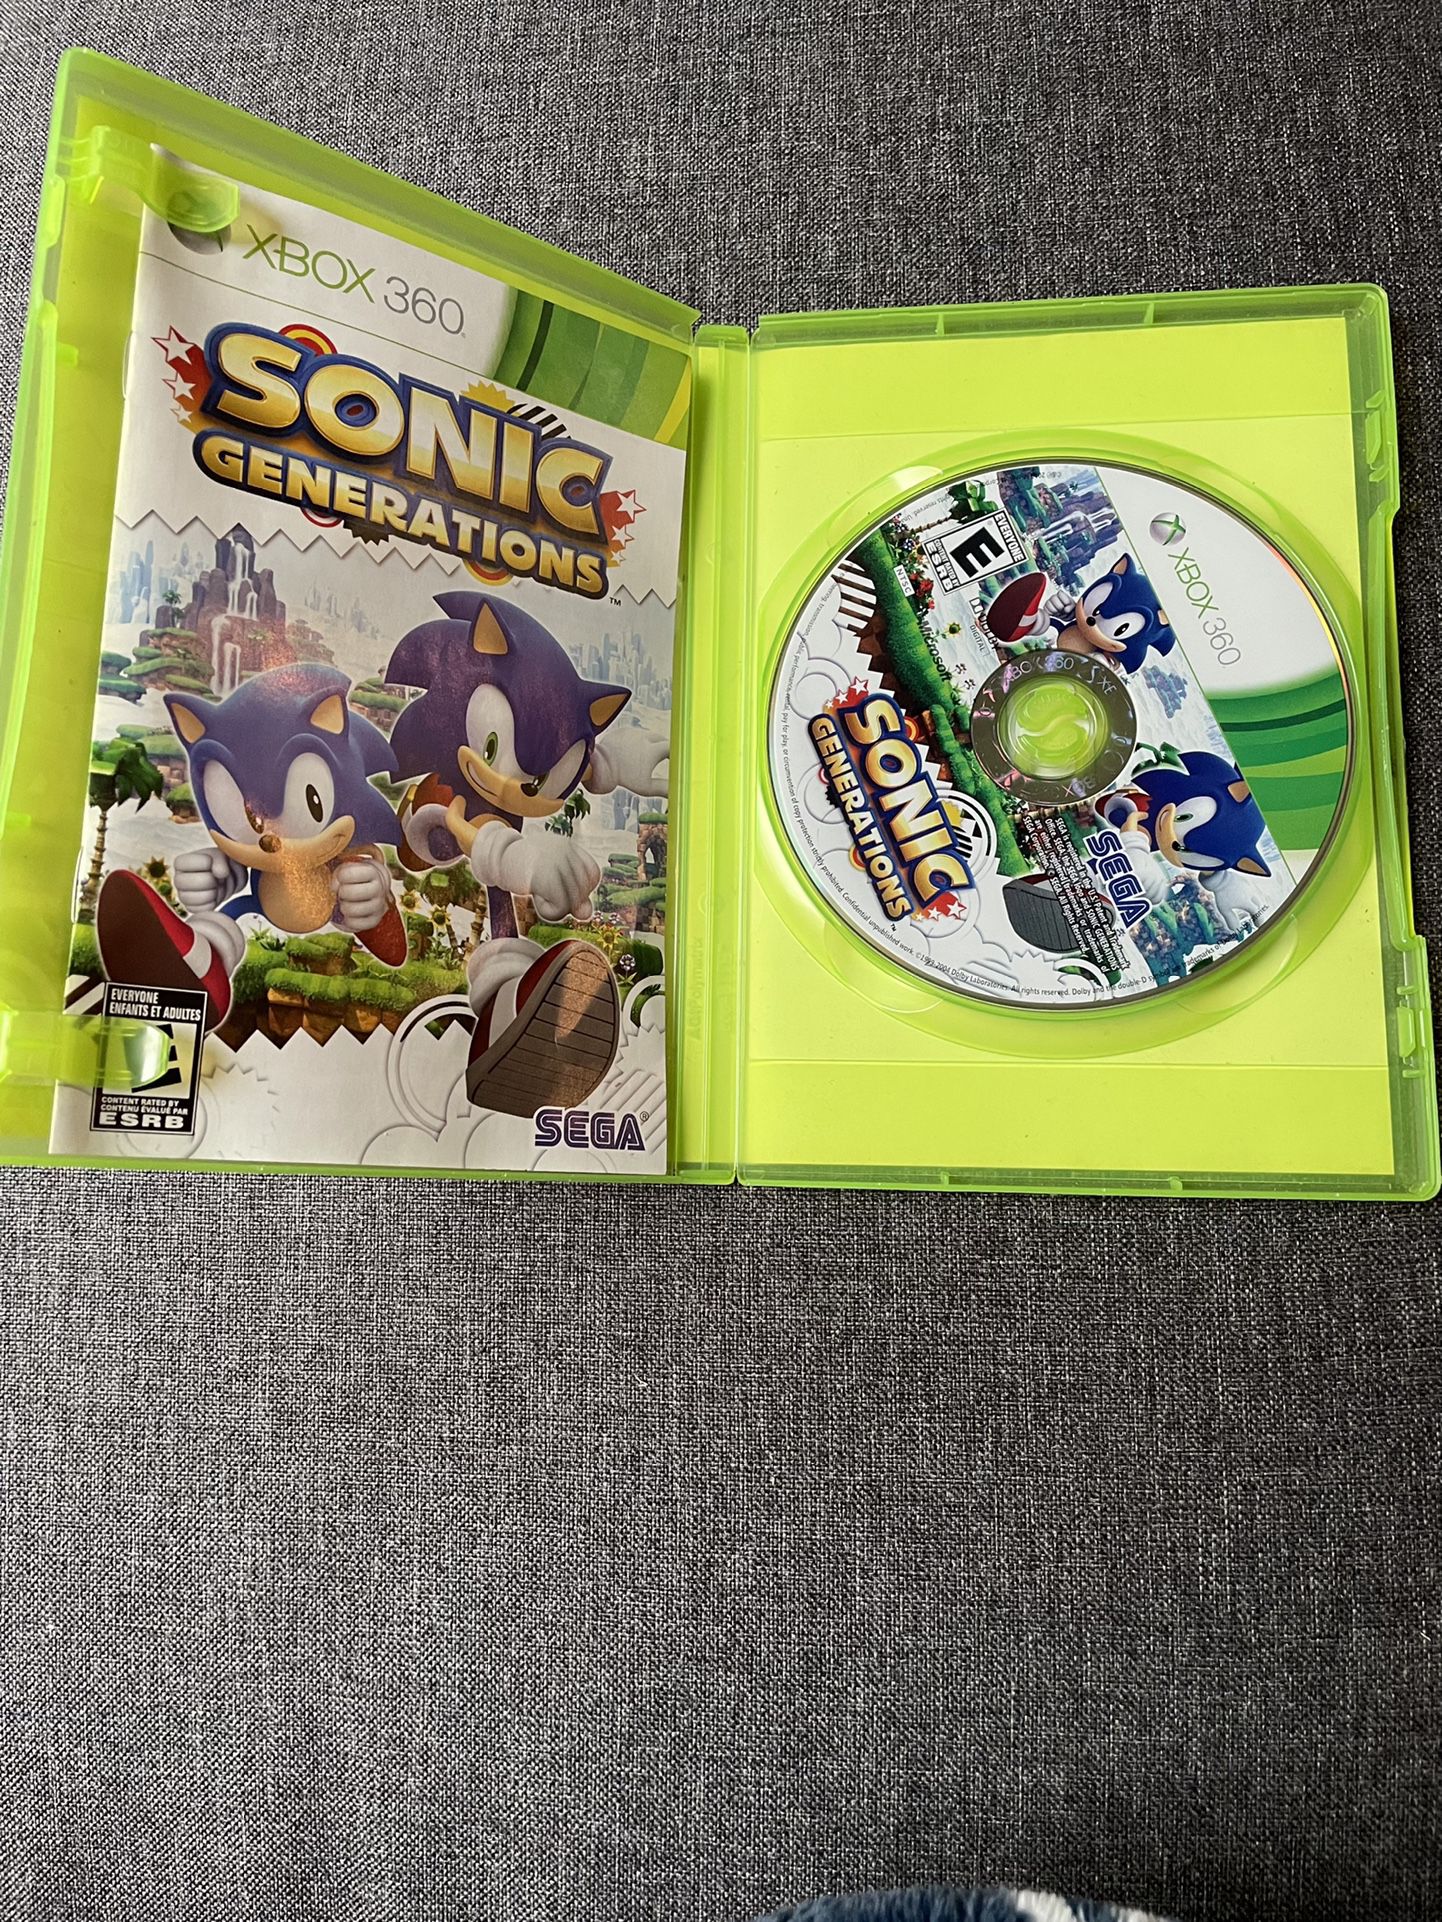 Sonic Generations - Xbox 360, Xbox 360